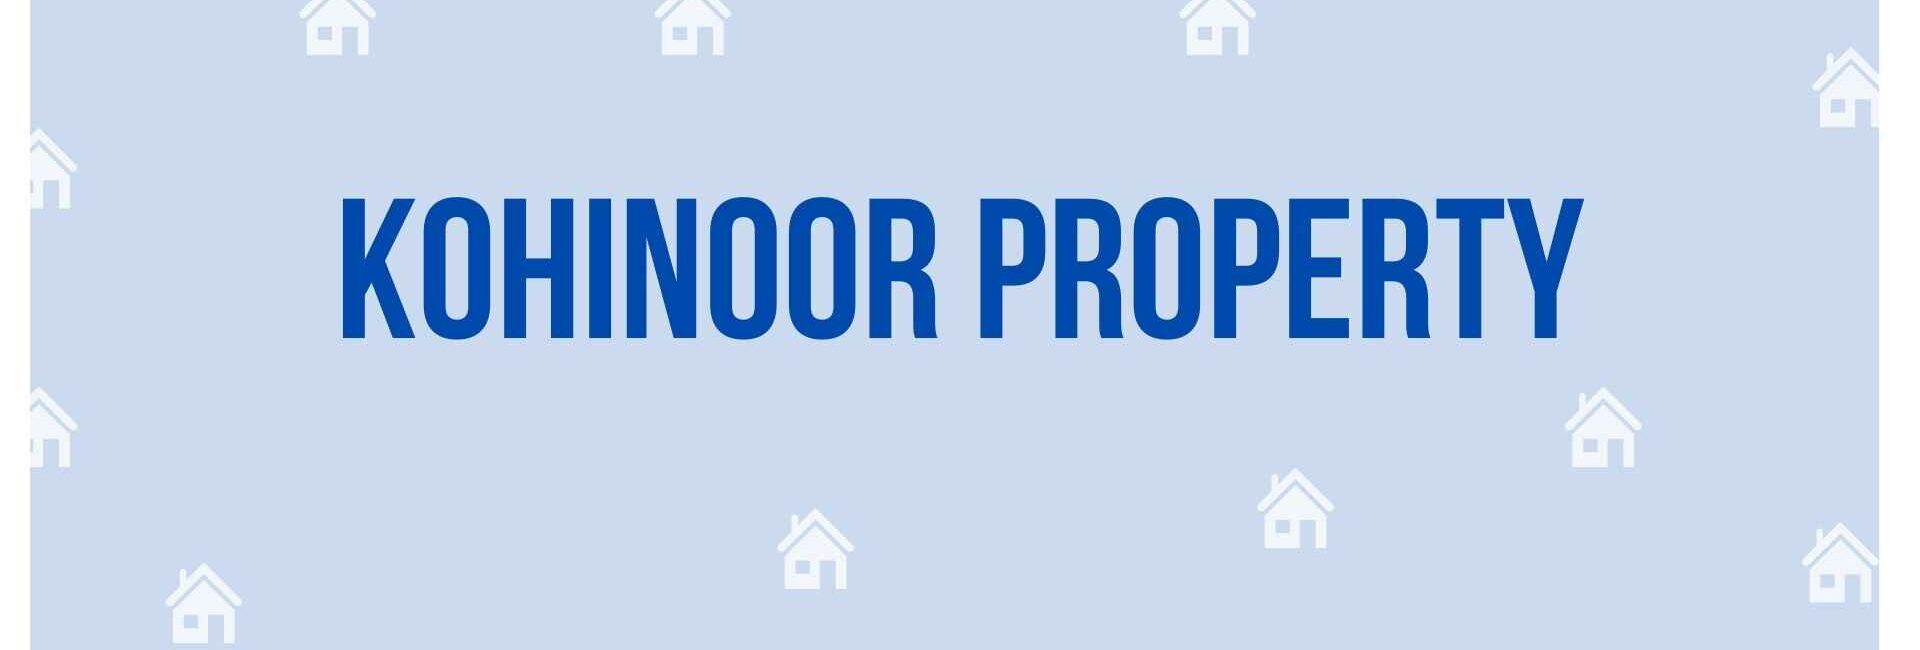 Kohinoor Property - Property Dealer in Noida